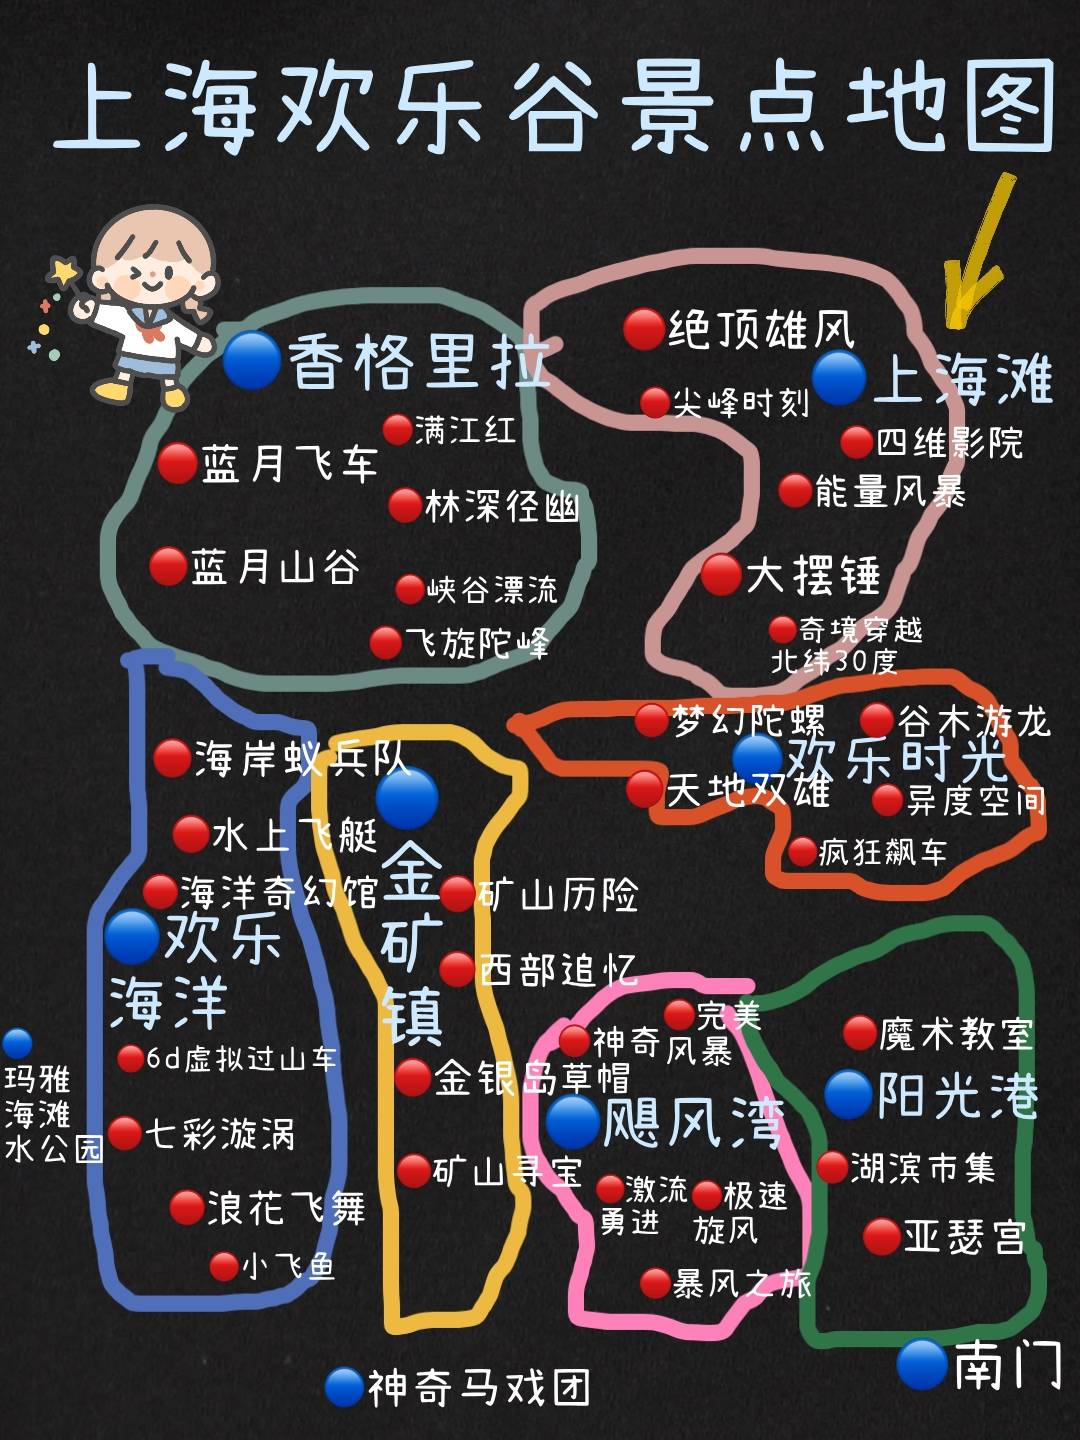 图2上海欢乐谷门票预约